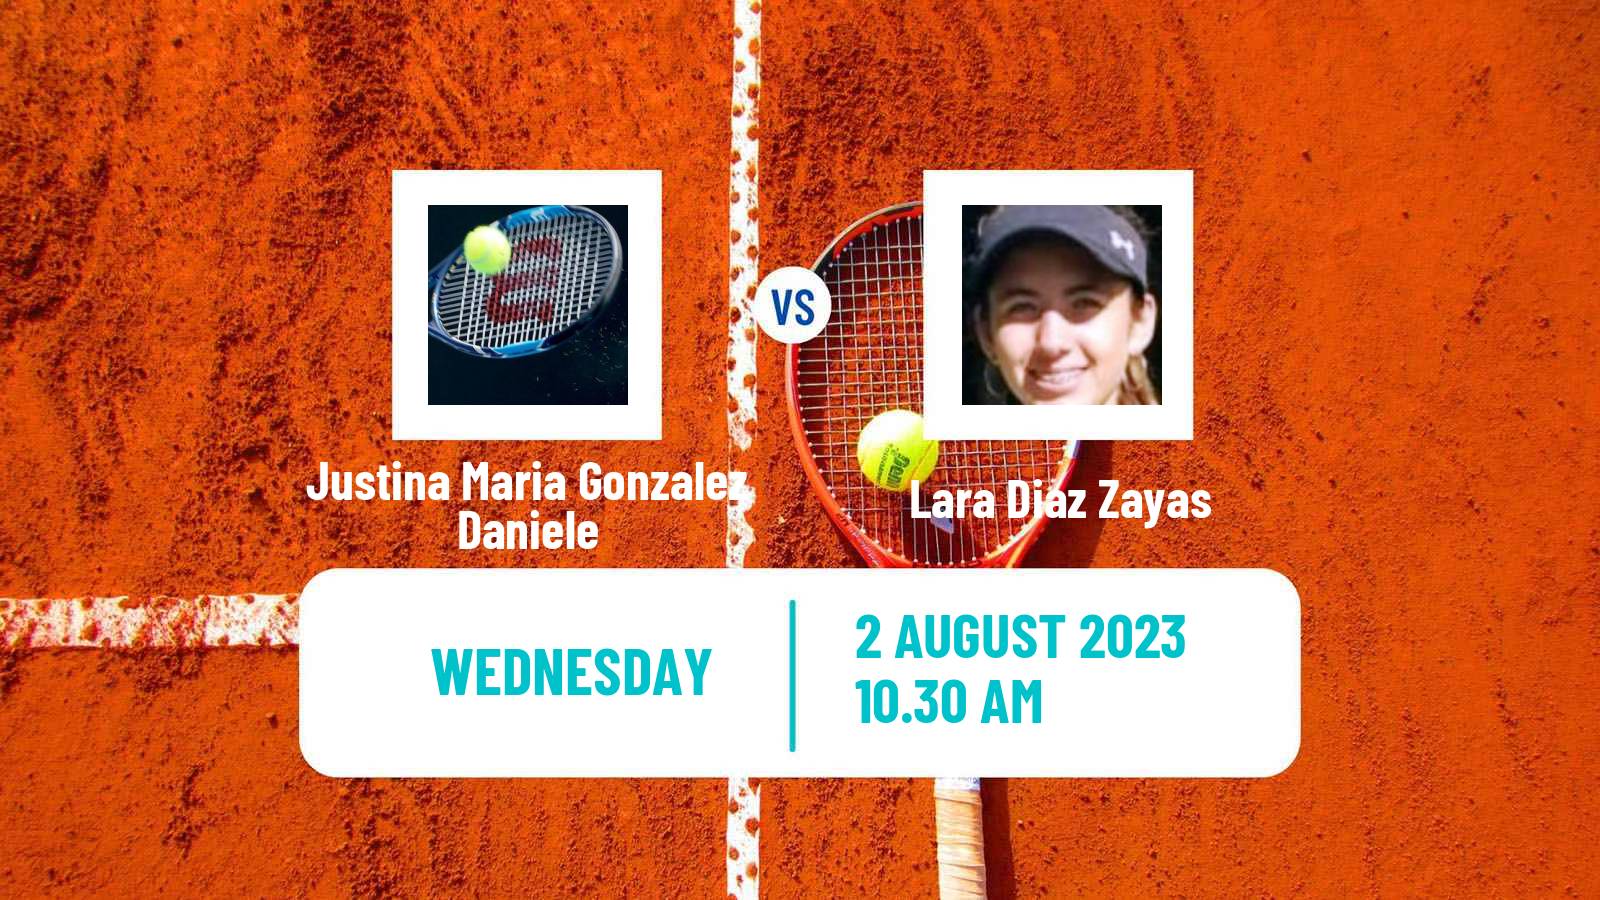 Tennis ITF W25 Junin Women Justina Maria Gonzalez Daniele - Lara Diaz Zayas